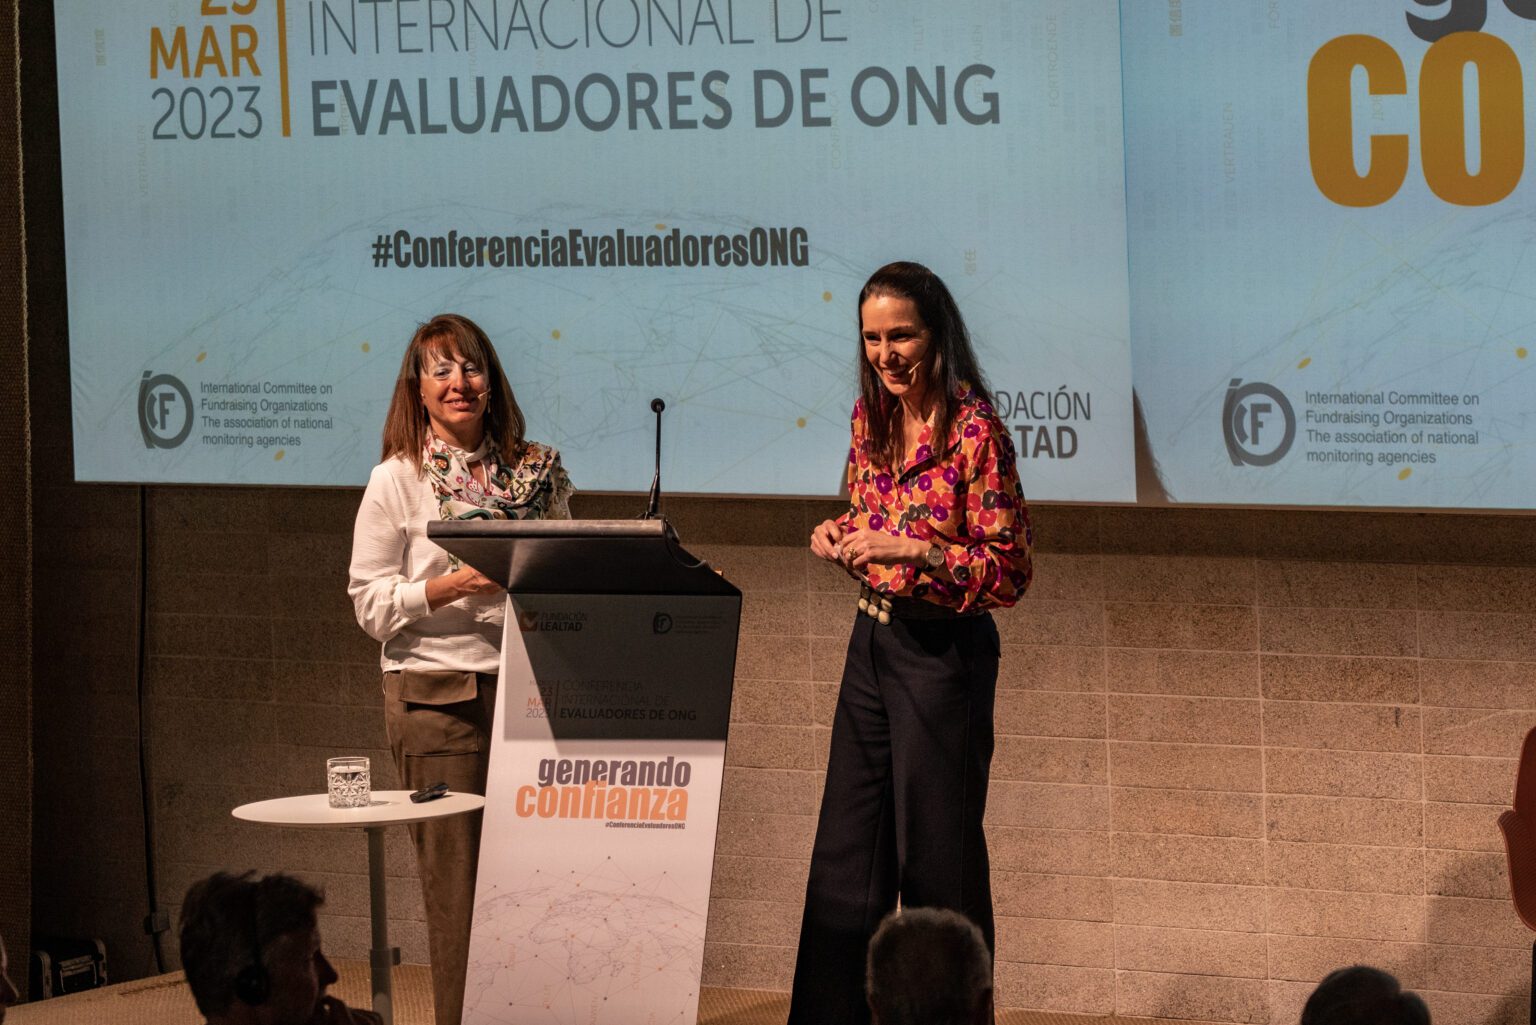 María Eugenia Larrégola, directora de RRIIC, y Ana Benavides, directora general de Fundación Lealtad y presidenta de ICFO, son las encargadas de conducir la Conferencia